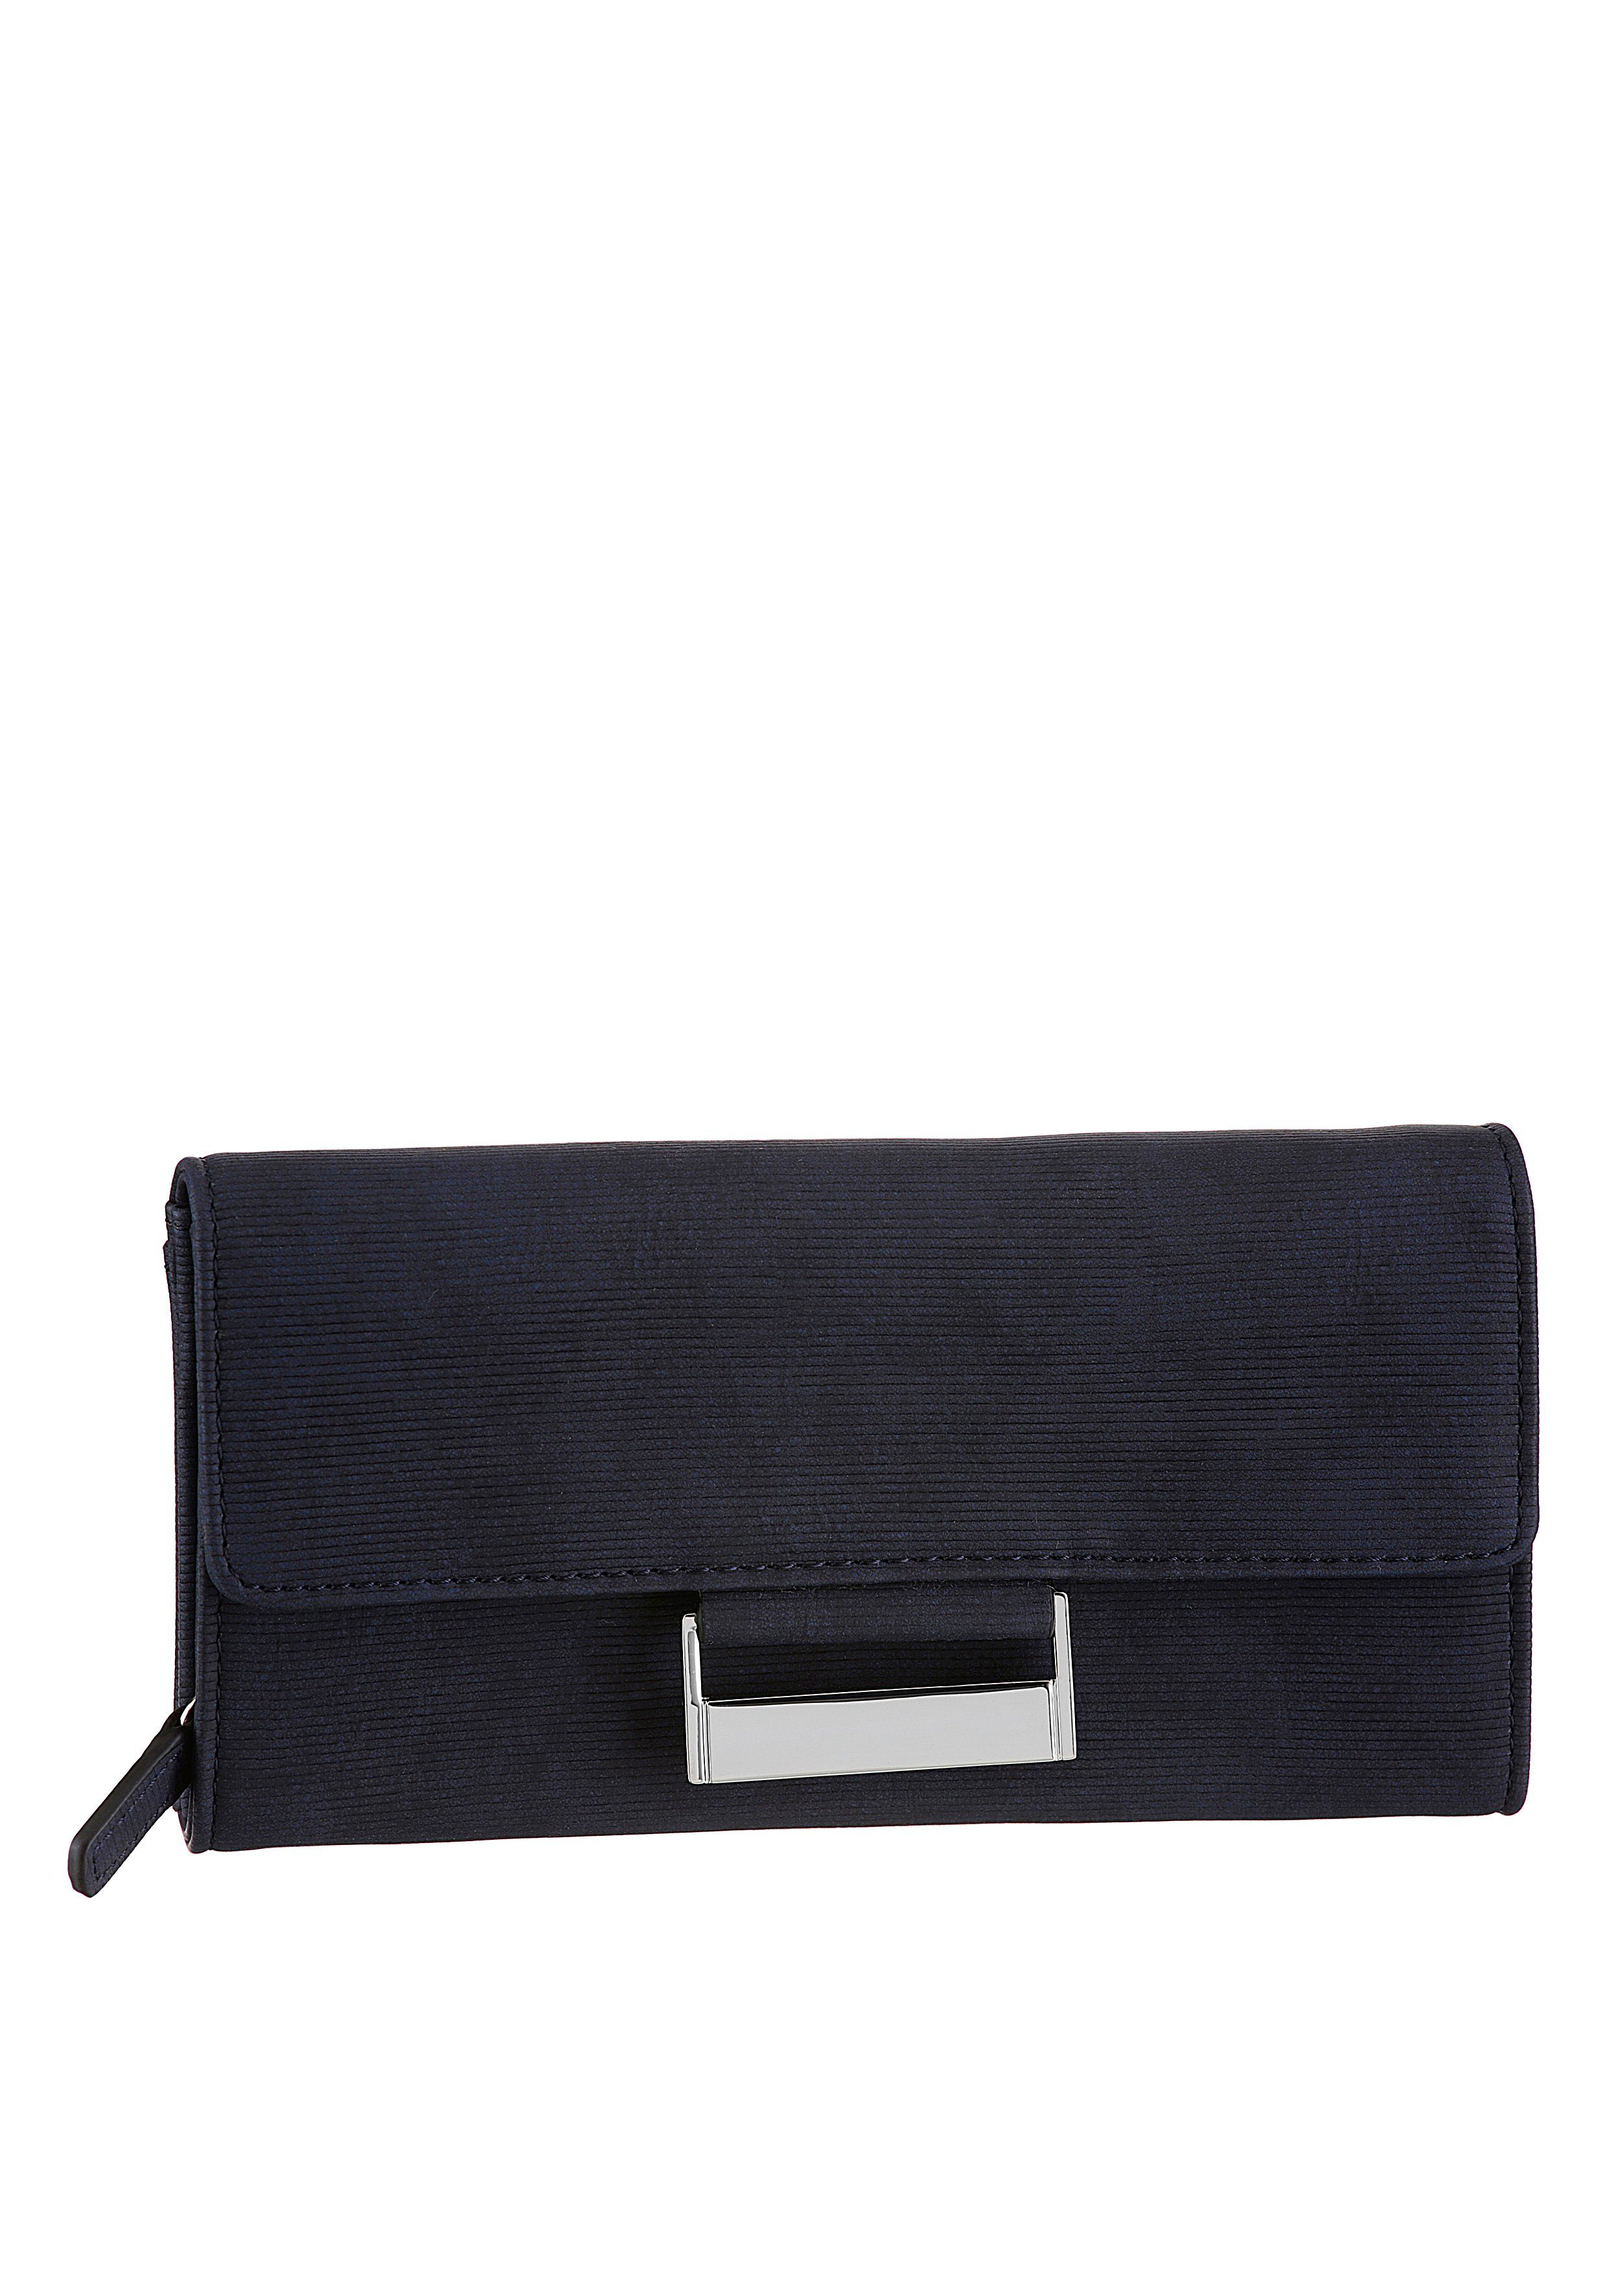 GERRY Bags Geldbörse WEBER lh9f, dunkelblau praktischer be Einteilung different purse mit